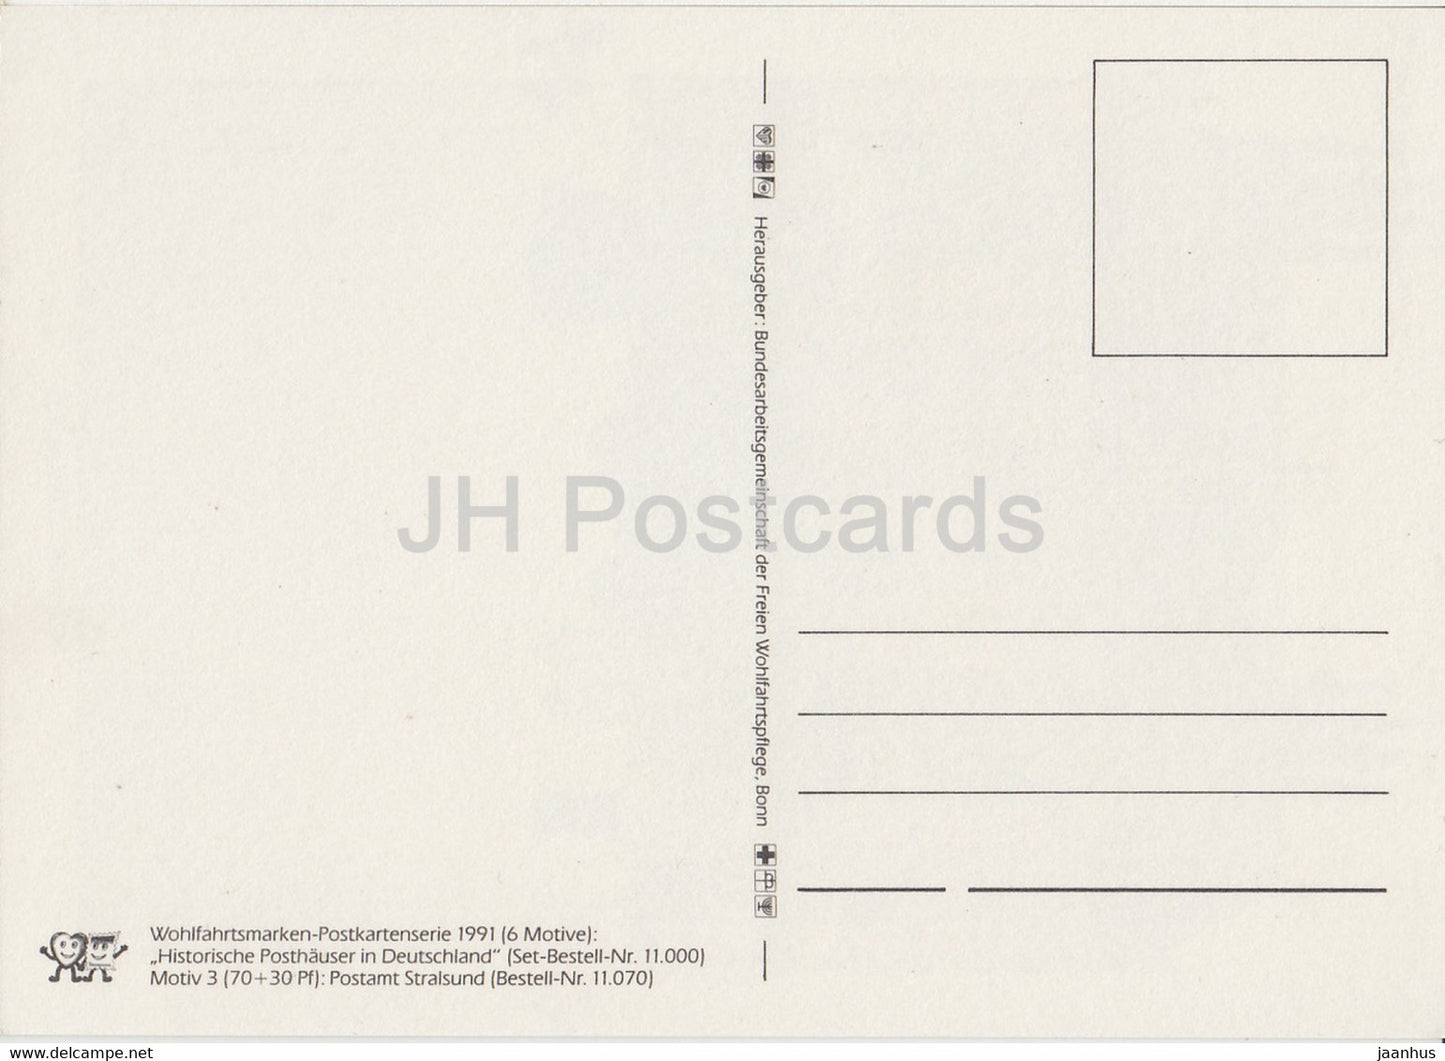 Postamt Stralsund - illustration - 1991 - Allemagne - inutilisé